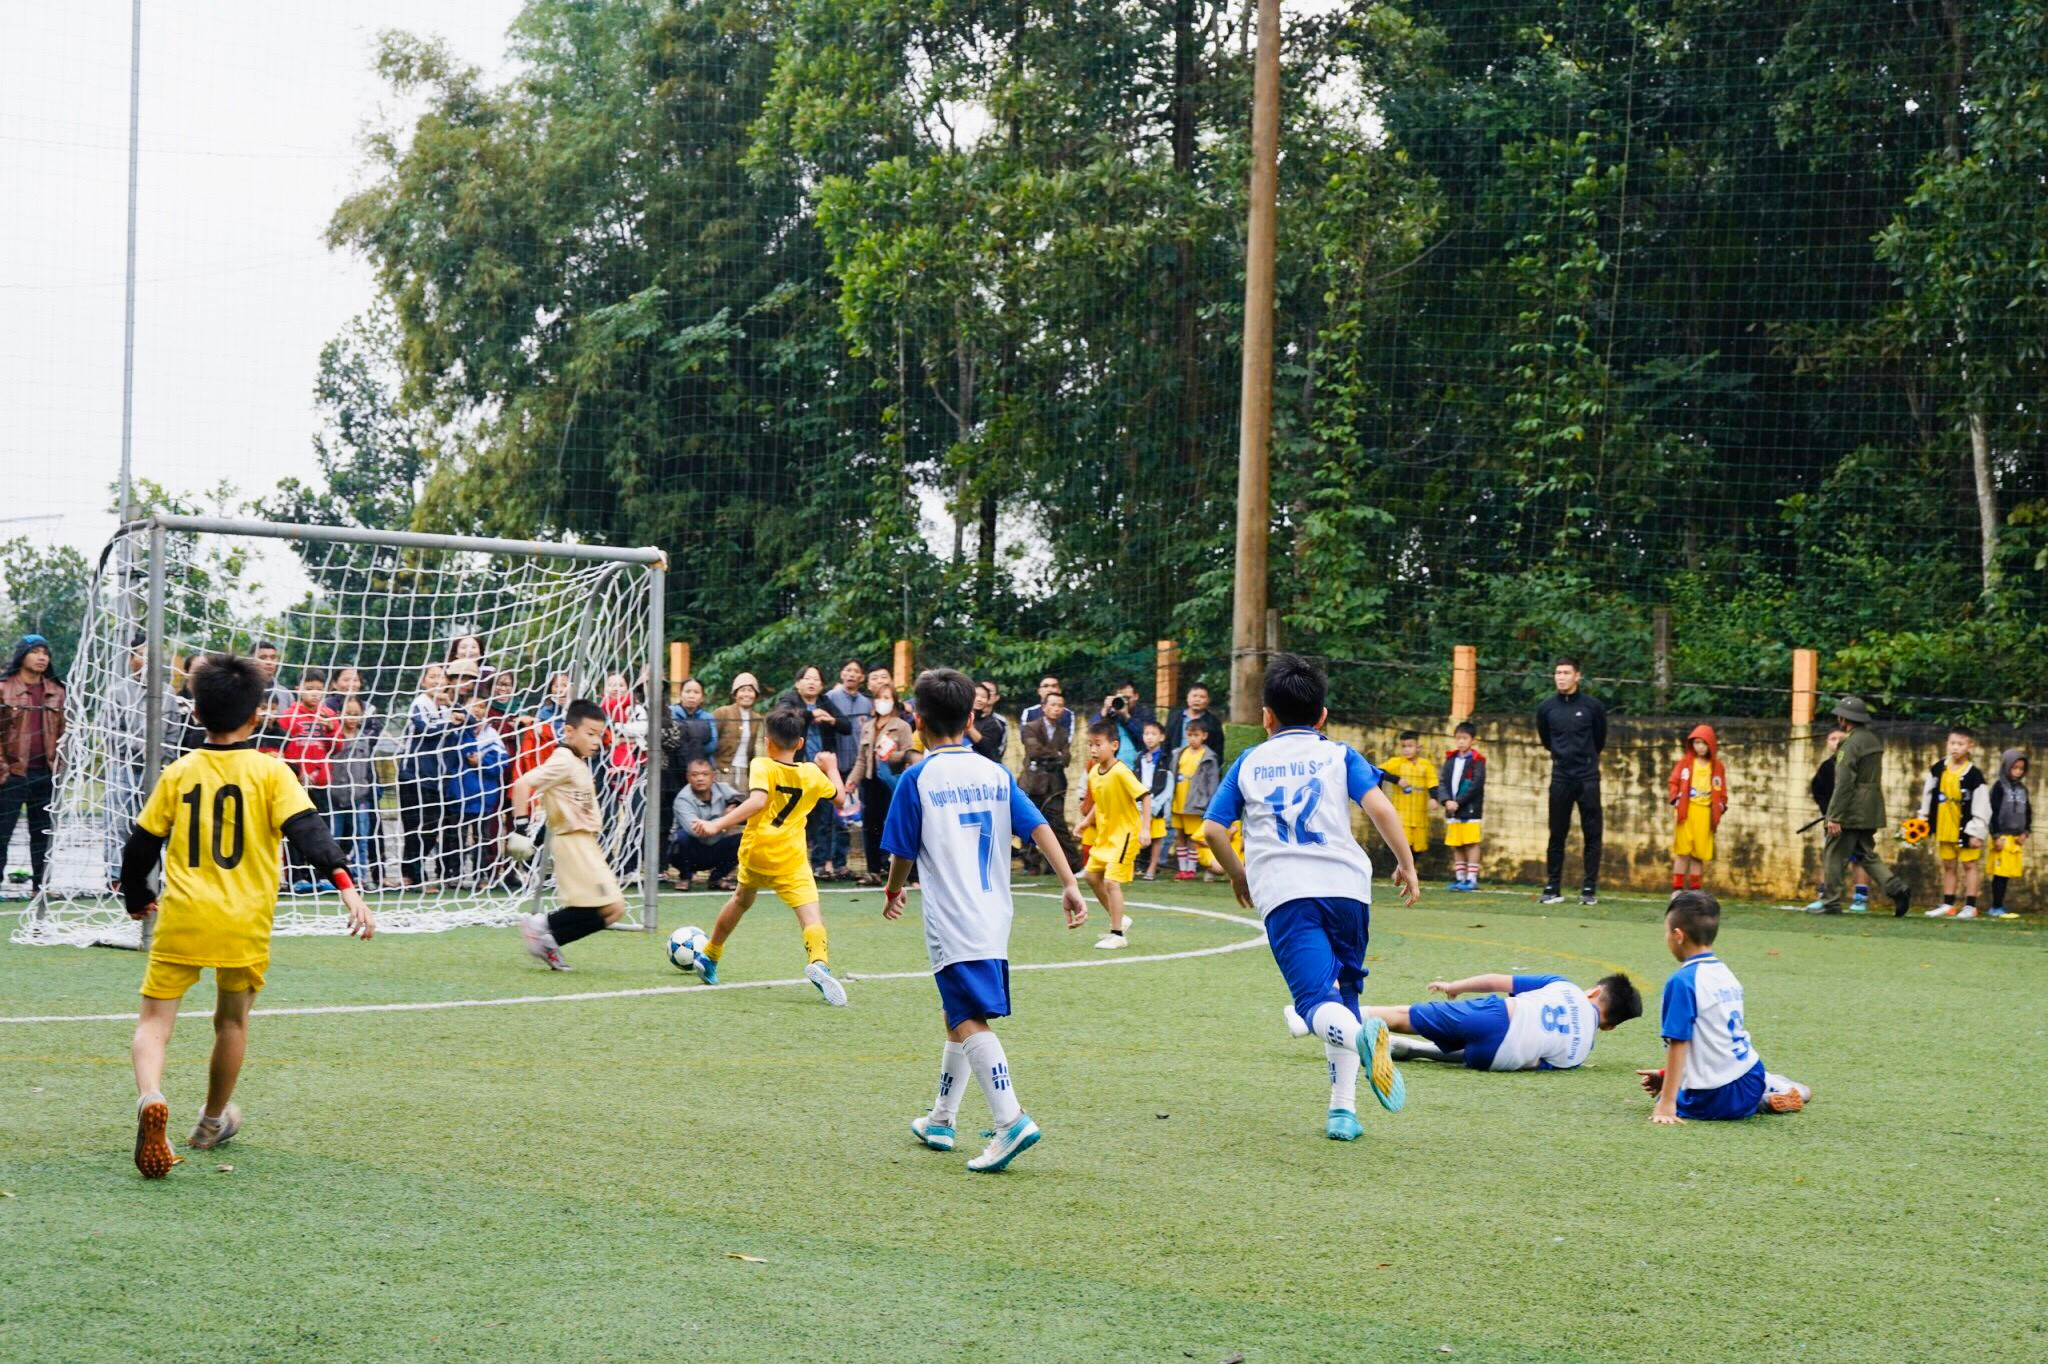 bna_Trận đấu kịch tính giữa thành phố Vinh 2 với đội Tân Kỳ, kết quả Tân Kỳ thắng 7-2.jpg